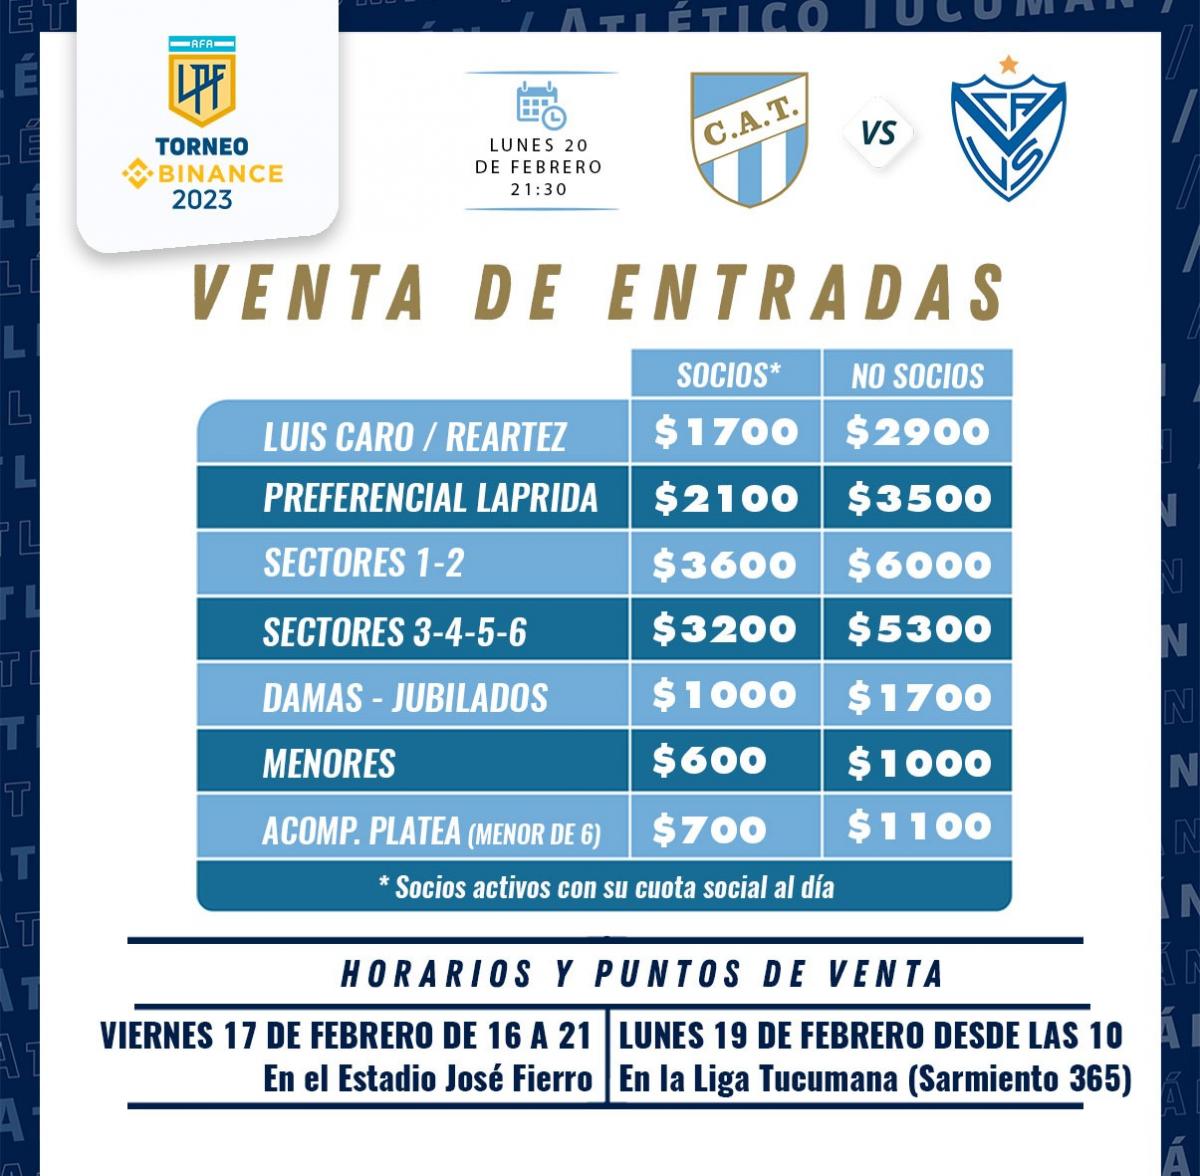 Mañana comienza la venta de entradas para Atlético Tucumán-Vélez